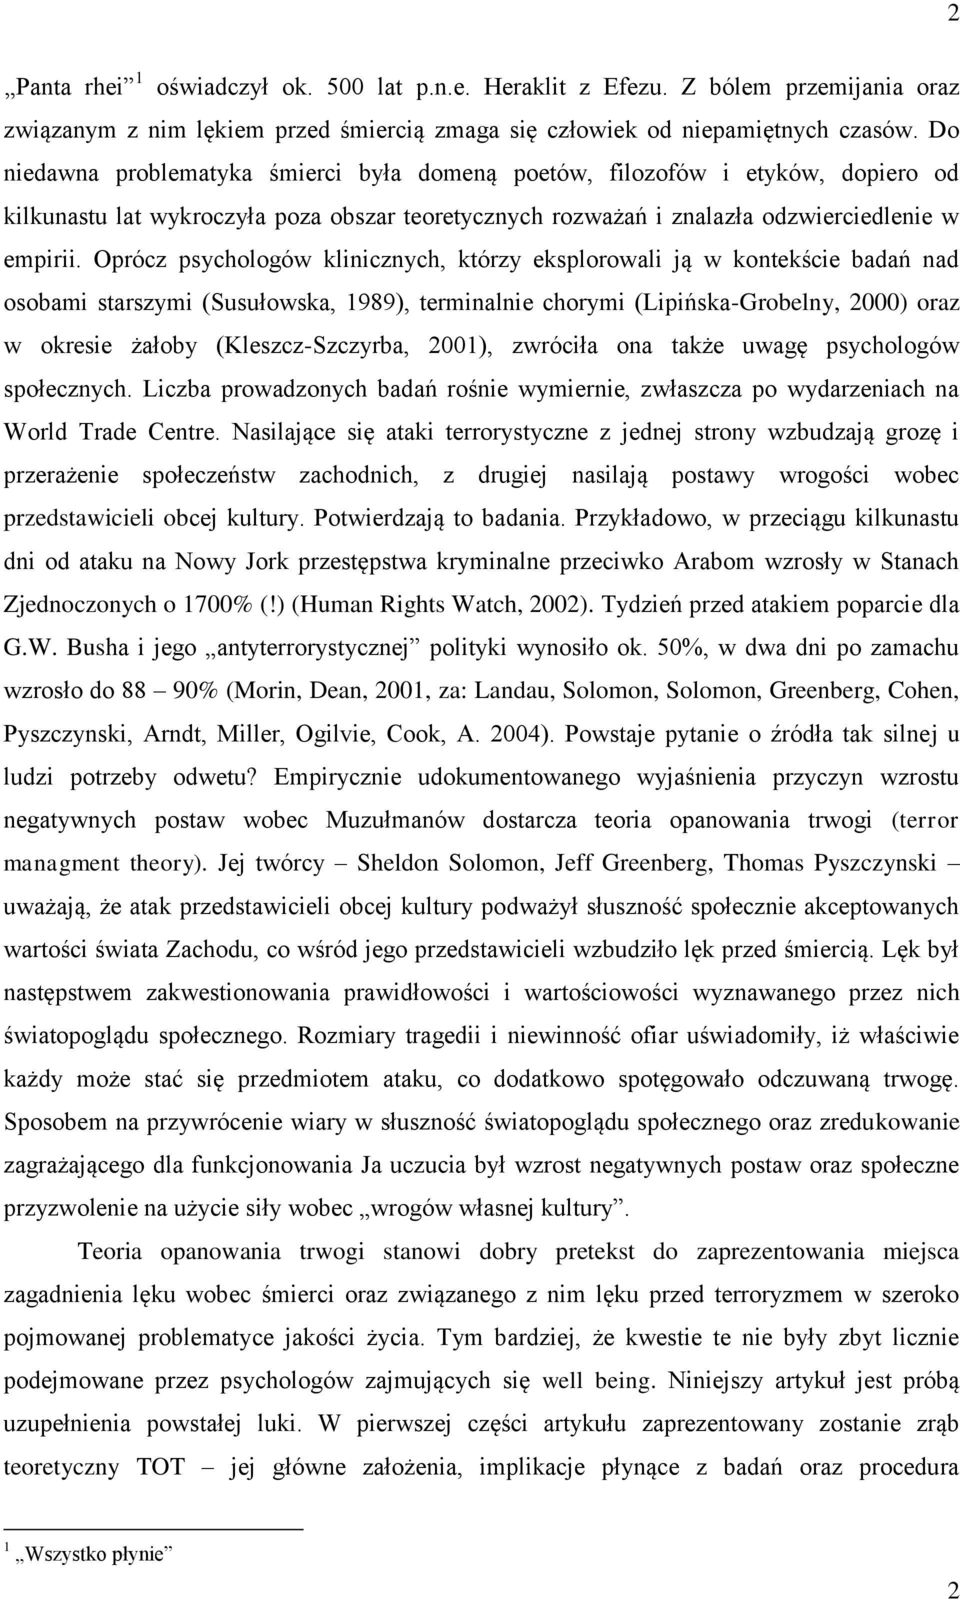 Oprócz psychologów klinicznych, którzy eksplorowali ją w kontekście badań nad osobami starszymi (Susułowska, 1989), terminalnie chorymi (Lipińska-Grobelny, 2000) oraz w okresie żałoby